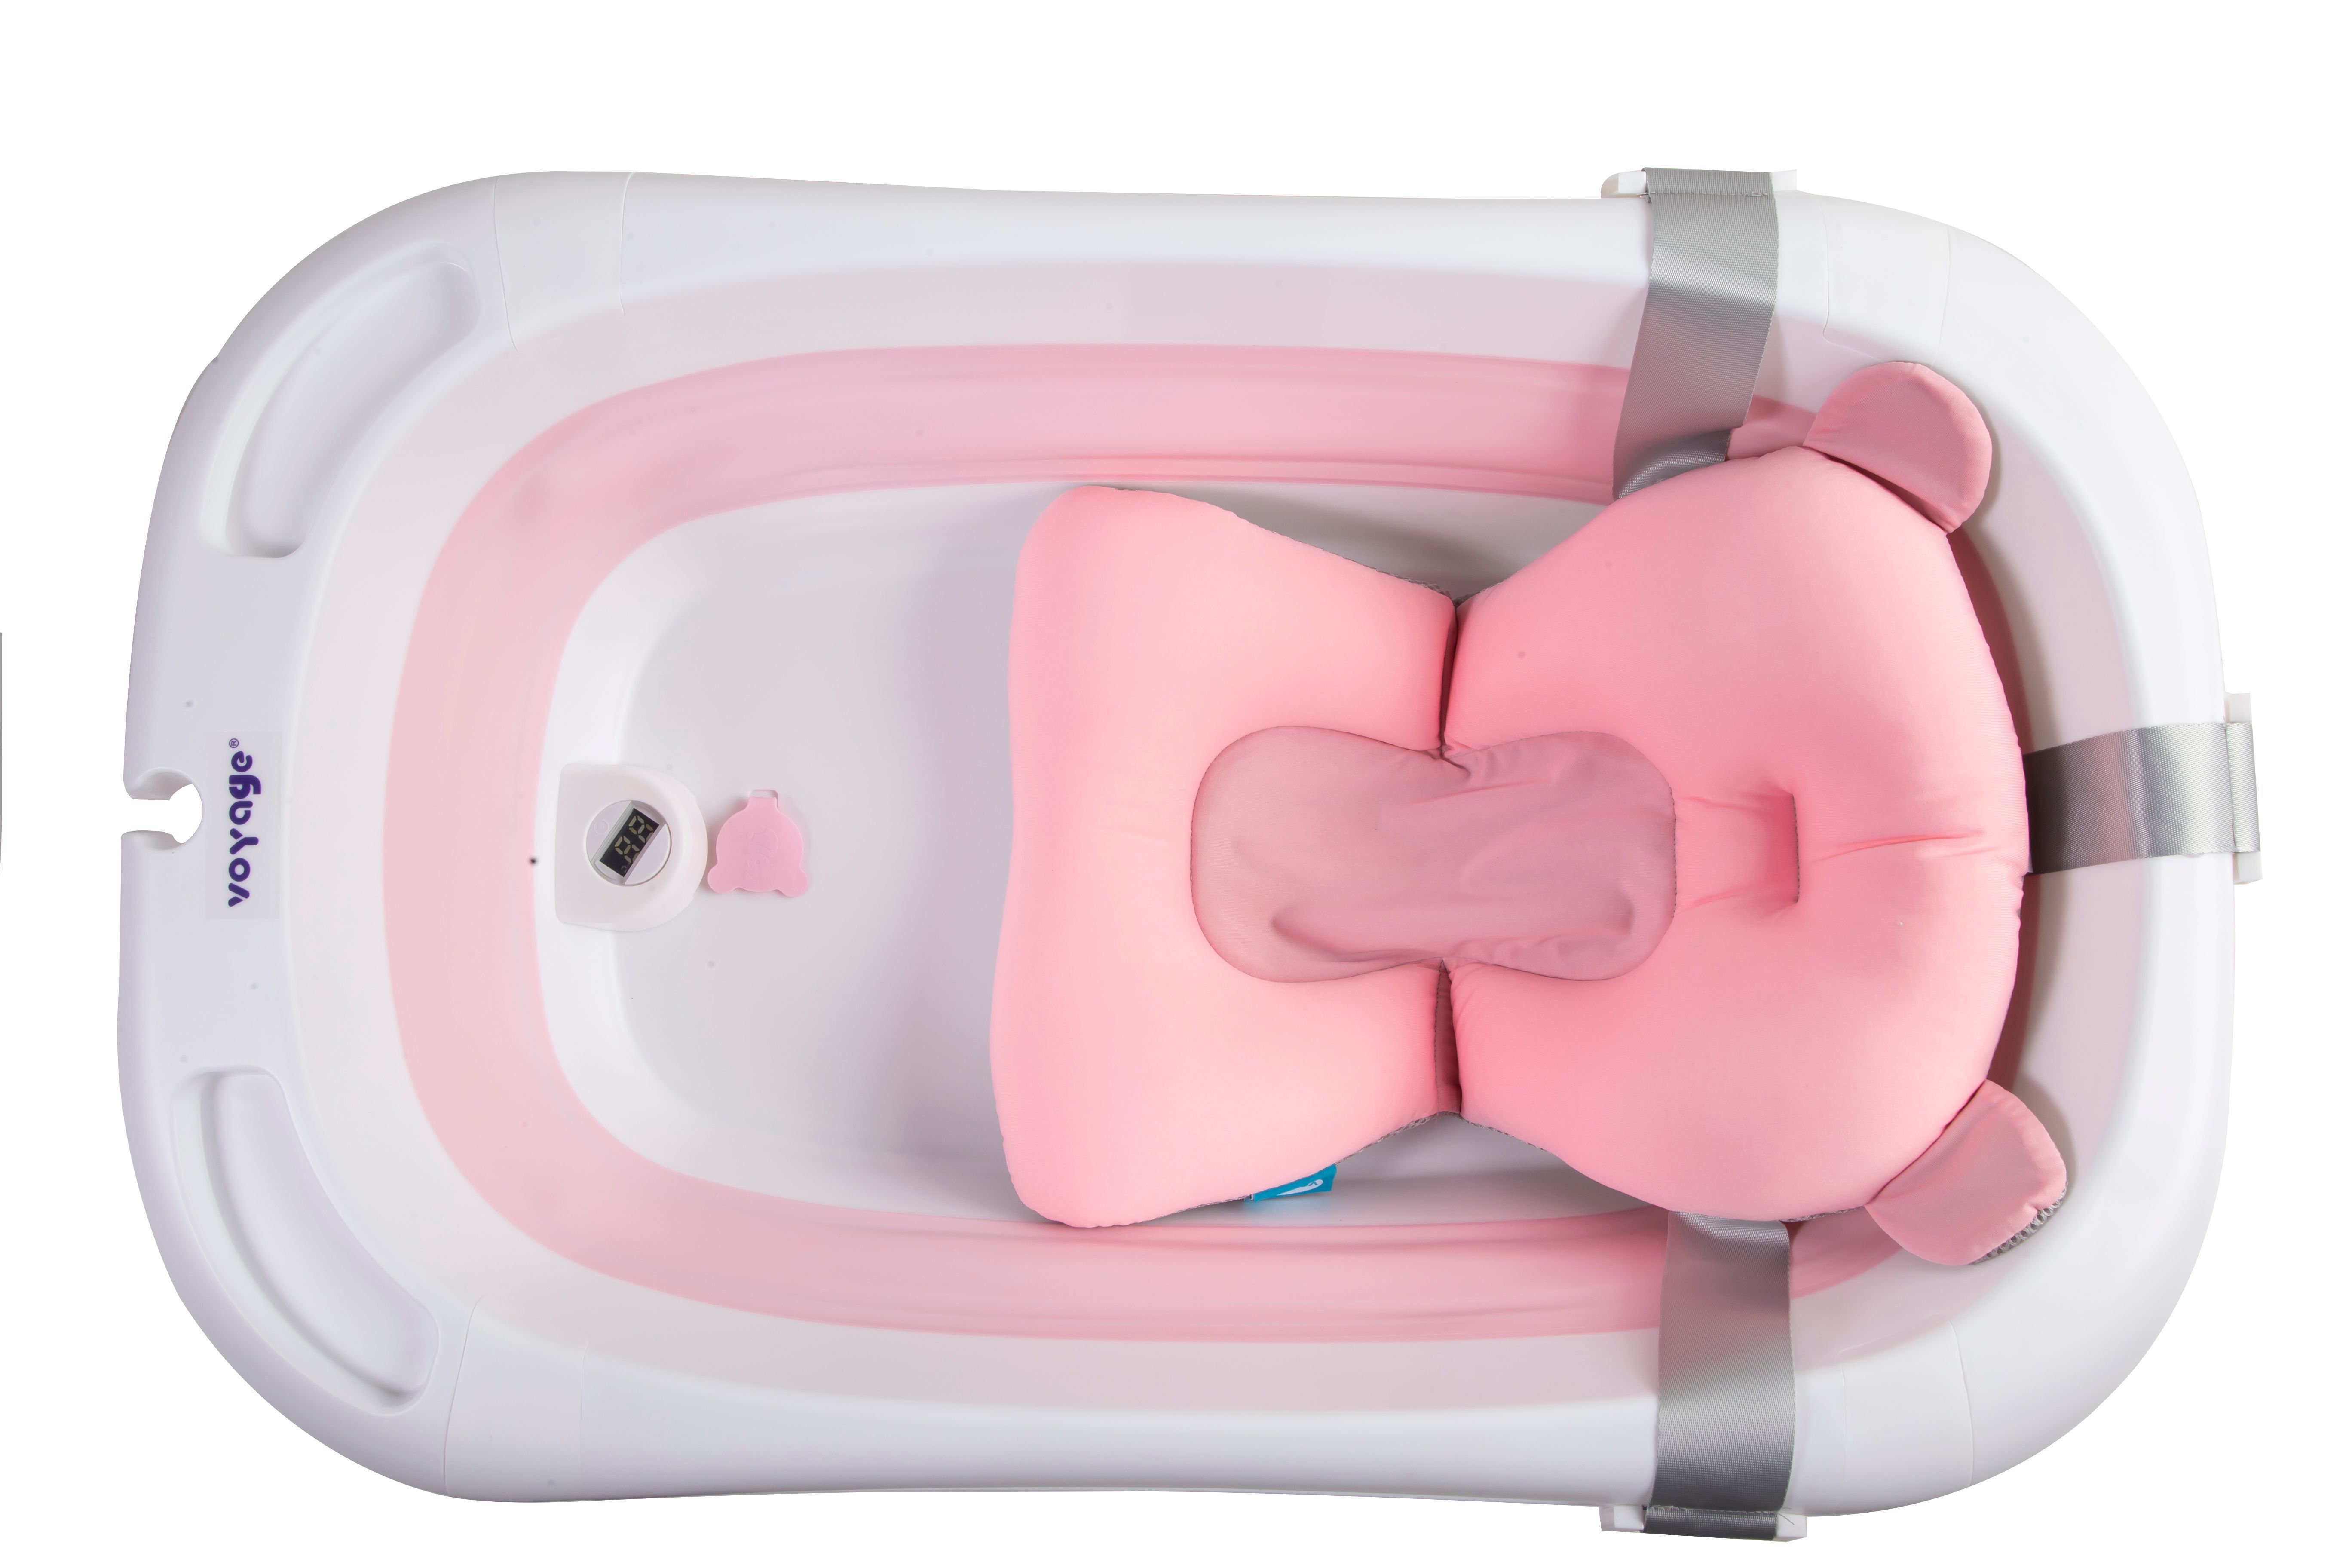 Bañera Plegable Para Bebe Con Cojin Antideslizante y termometro pink